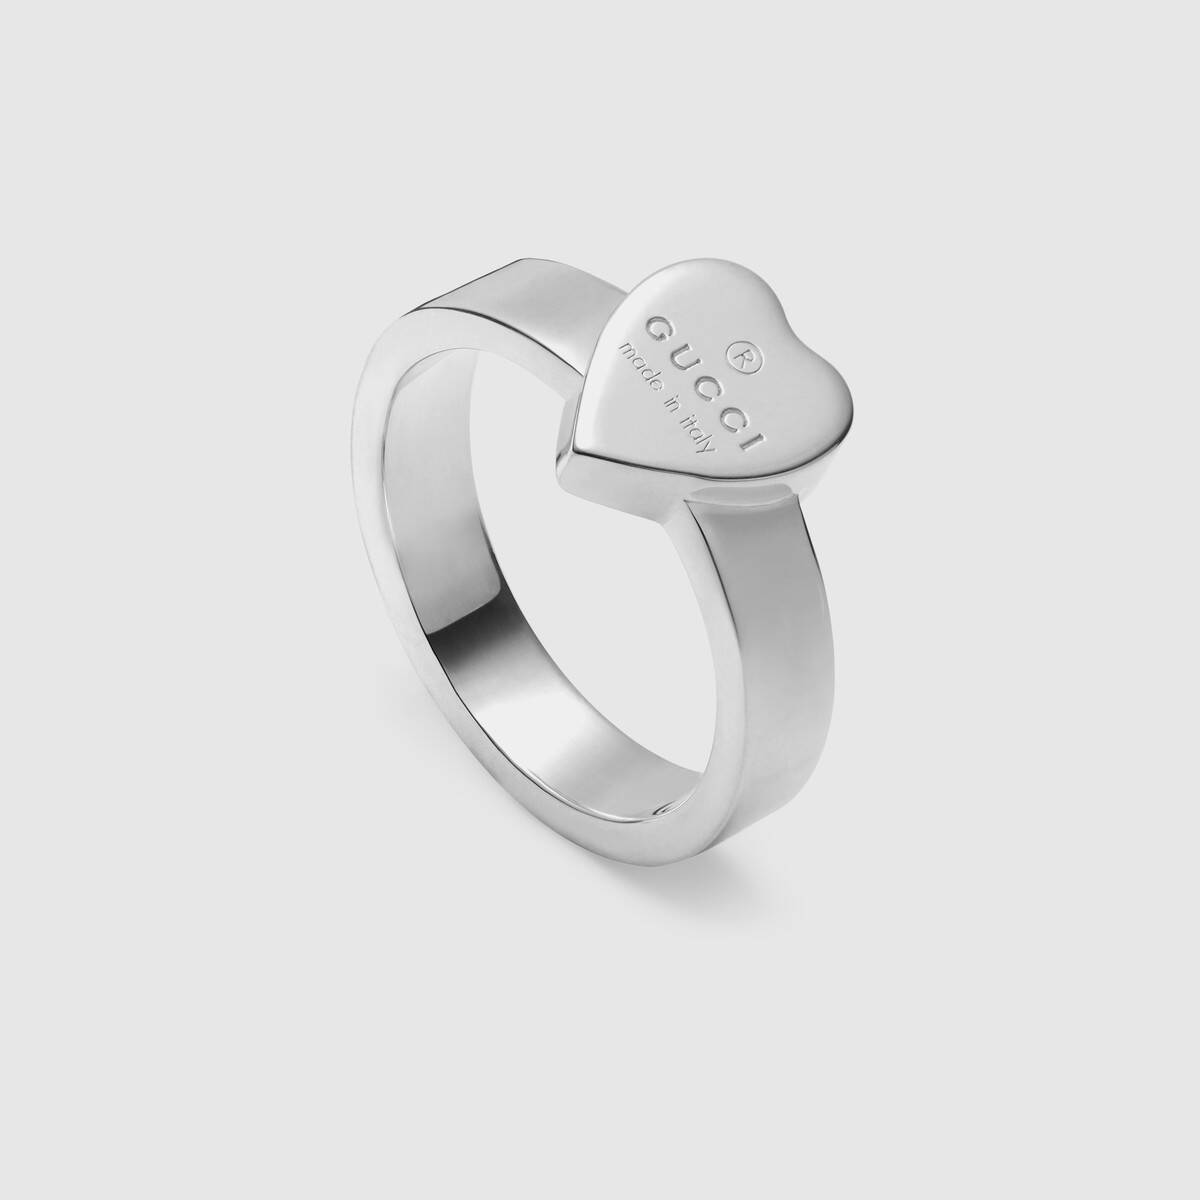 Tientallen Mona Lisa racket Gucci Trademark Heart Ring Zilver | Juwelier Piet Schilder